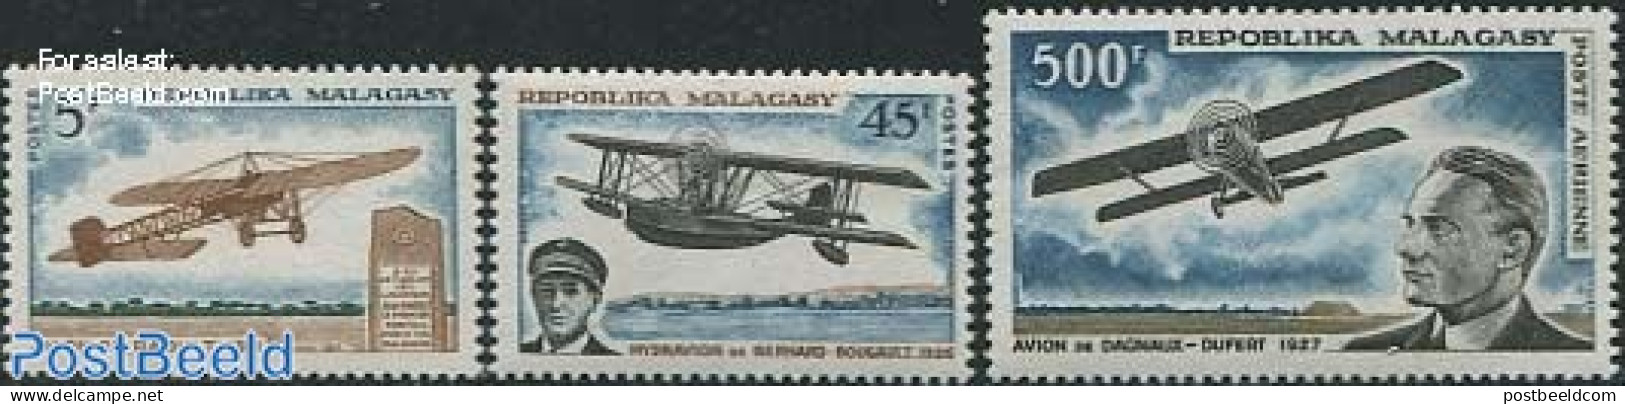 Madagascar 1967 Aeroplanes 3v, Mint NH, Transport - Aircraft & Aviation - Aviones